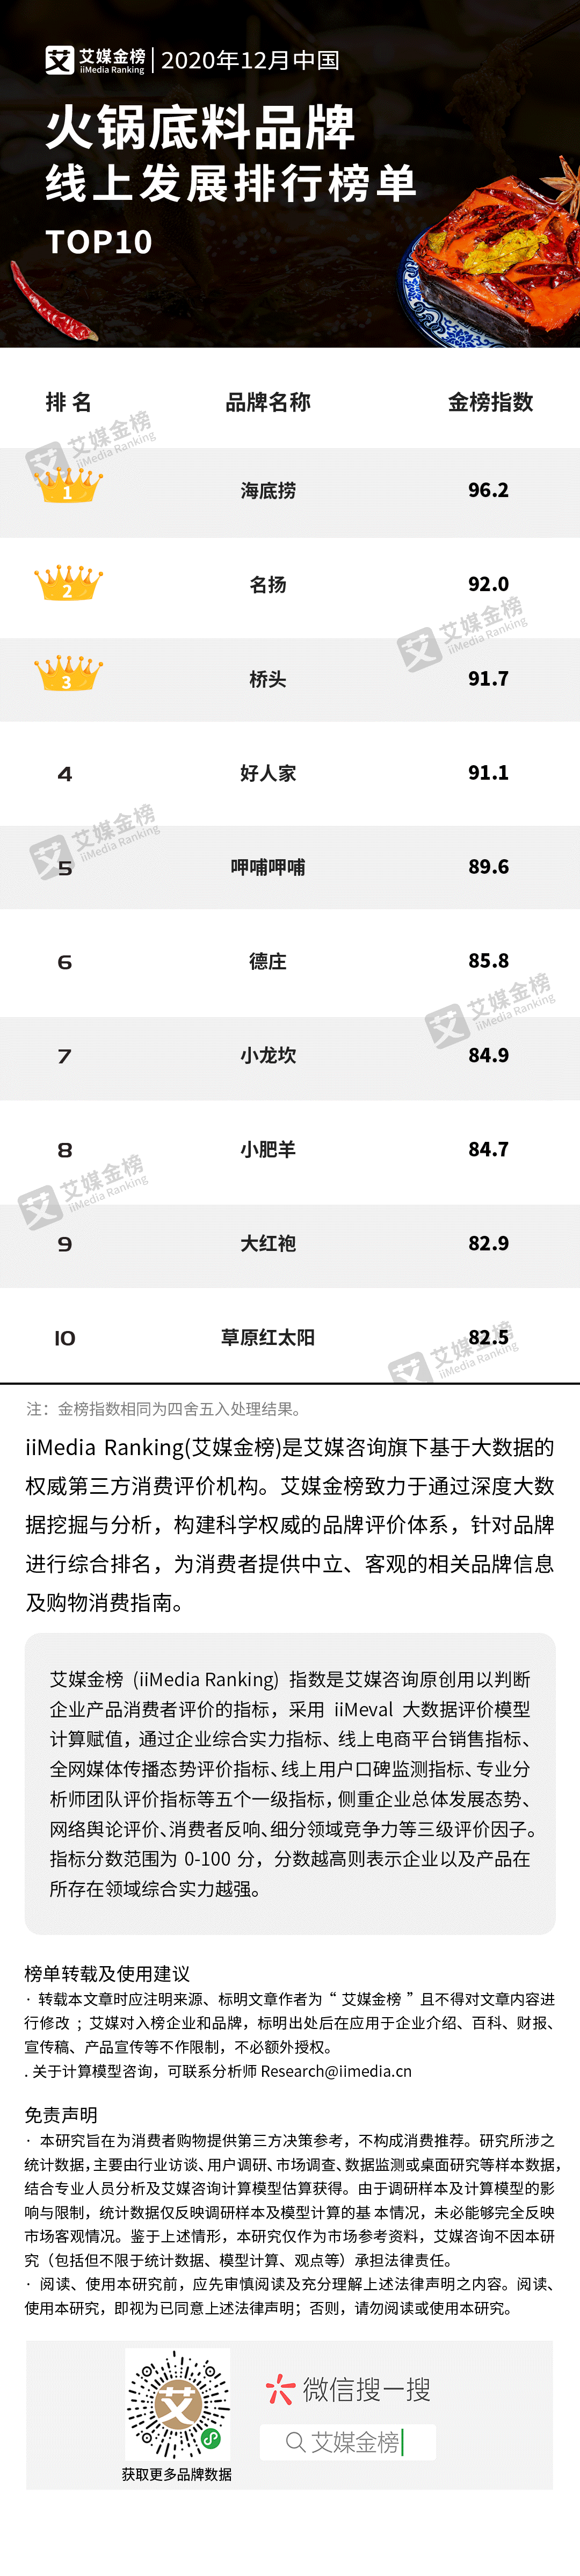 肥牛排行榜_2020年12月中国火锅底料品牌线上发展排行榜单TOP10,川渝地区品...